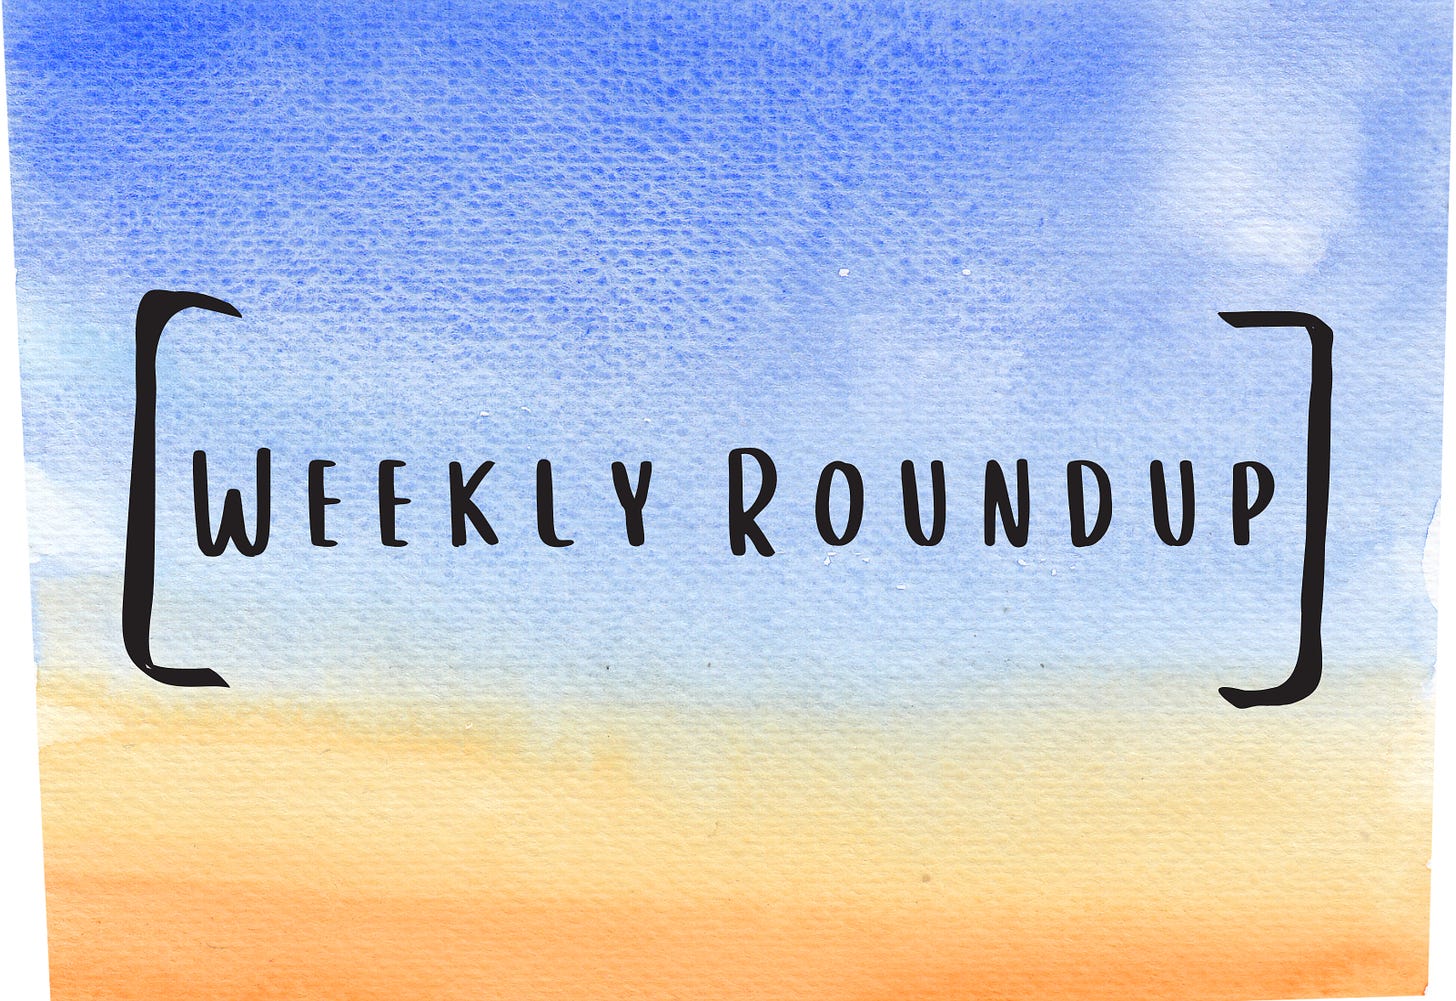 Image says "Weekly Roundup."